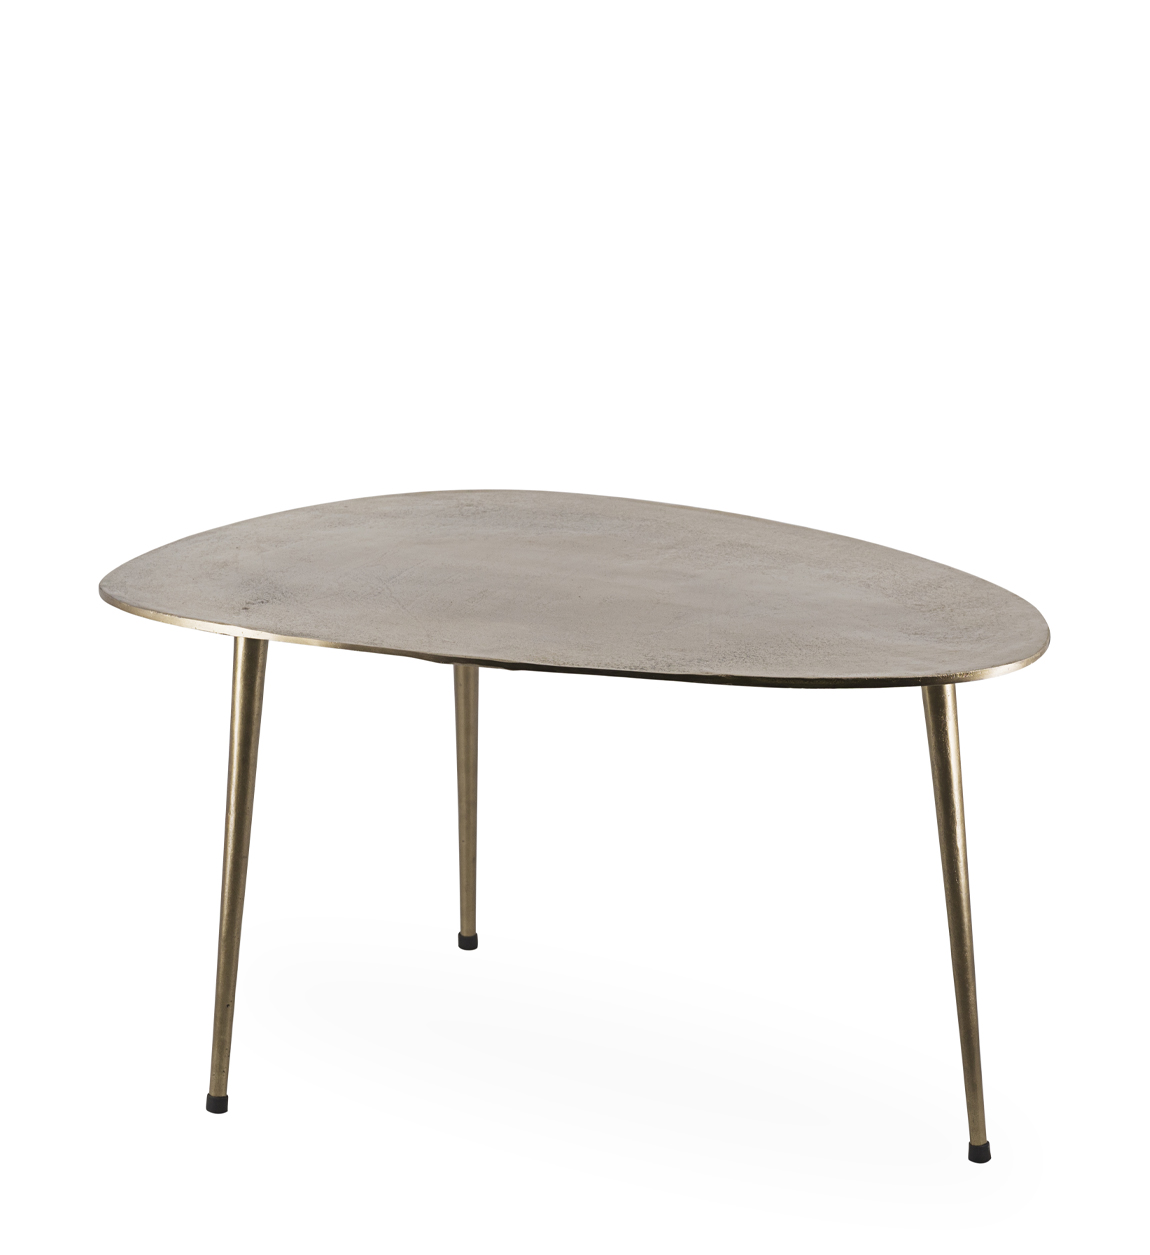 Table basse en aluminium couleur bronze vieilli L85